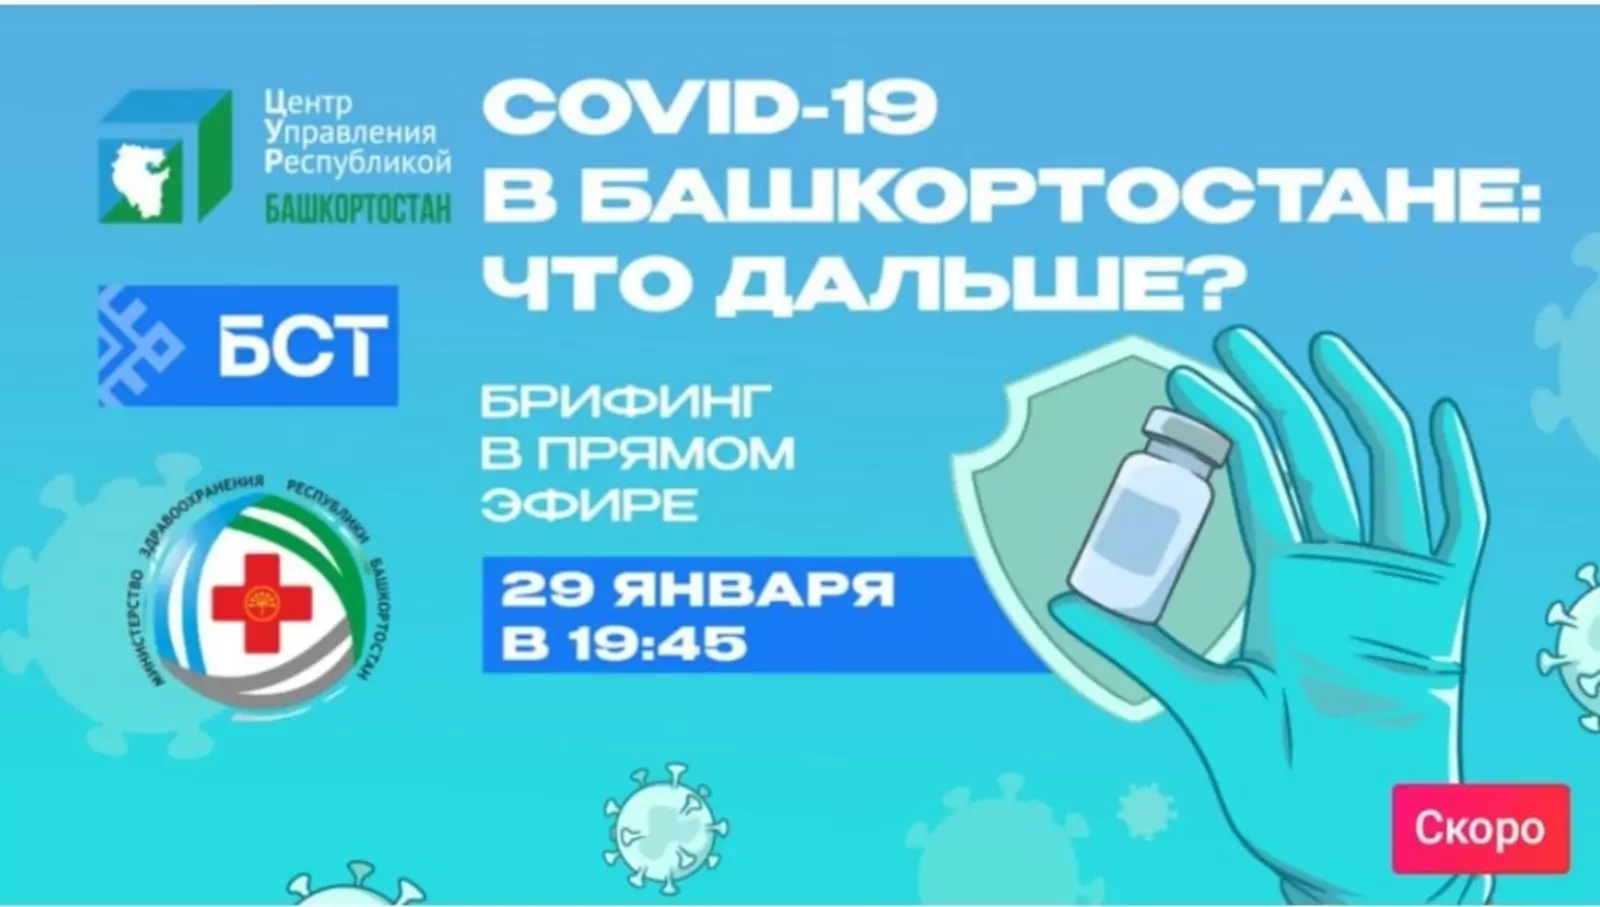 COVID-19 в Башкортостане: что дальше?